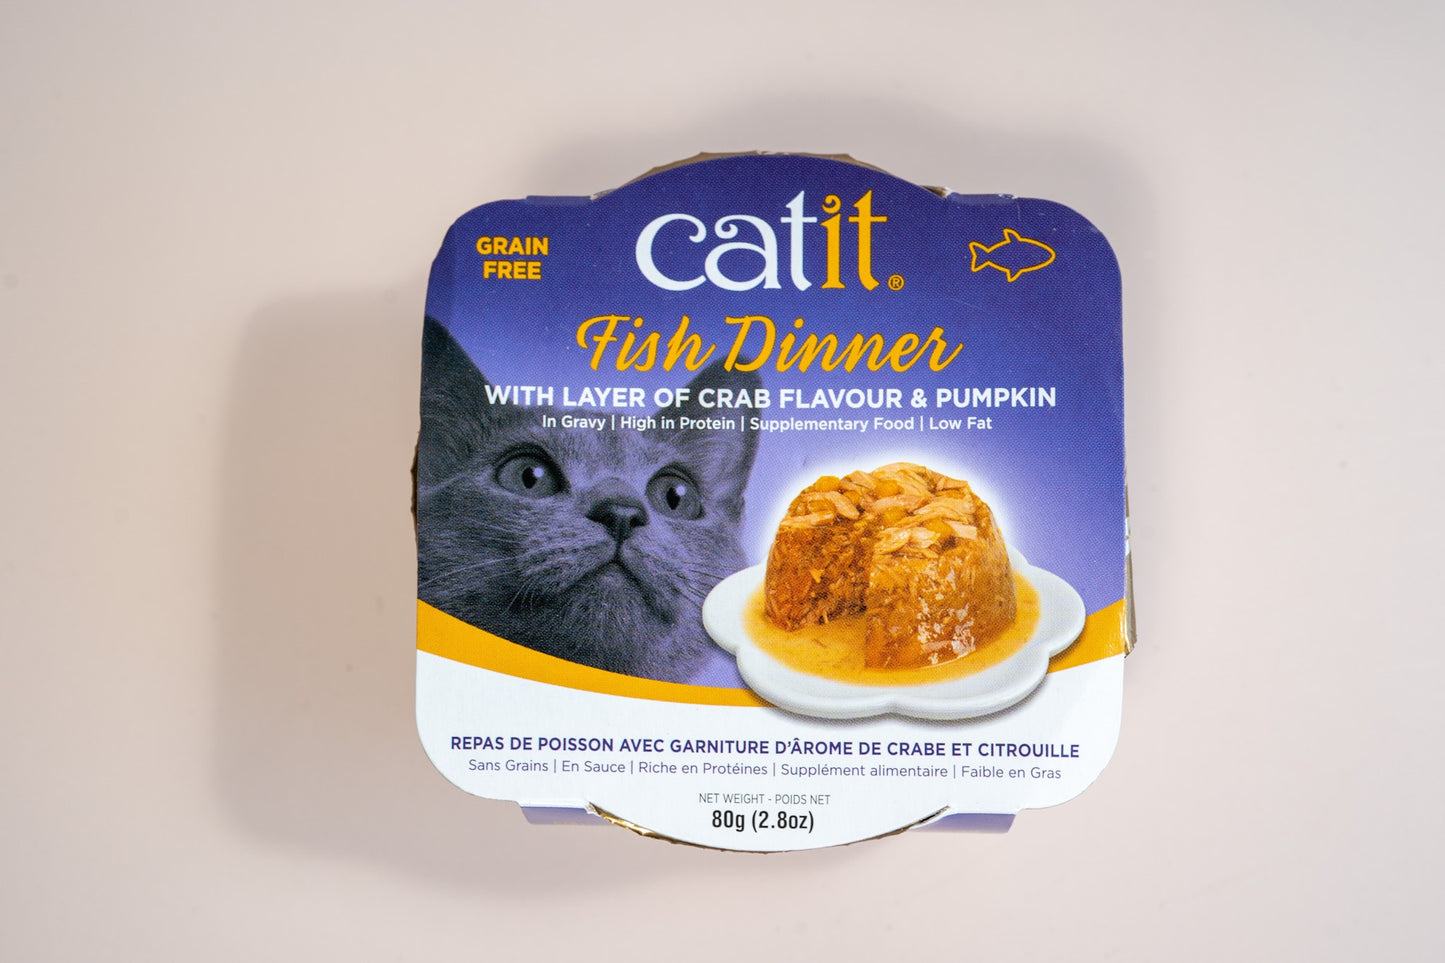 Vue de face de la nourriture humide pour chats Catit Fish Dinner avec garniture de crabe et citrouille.